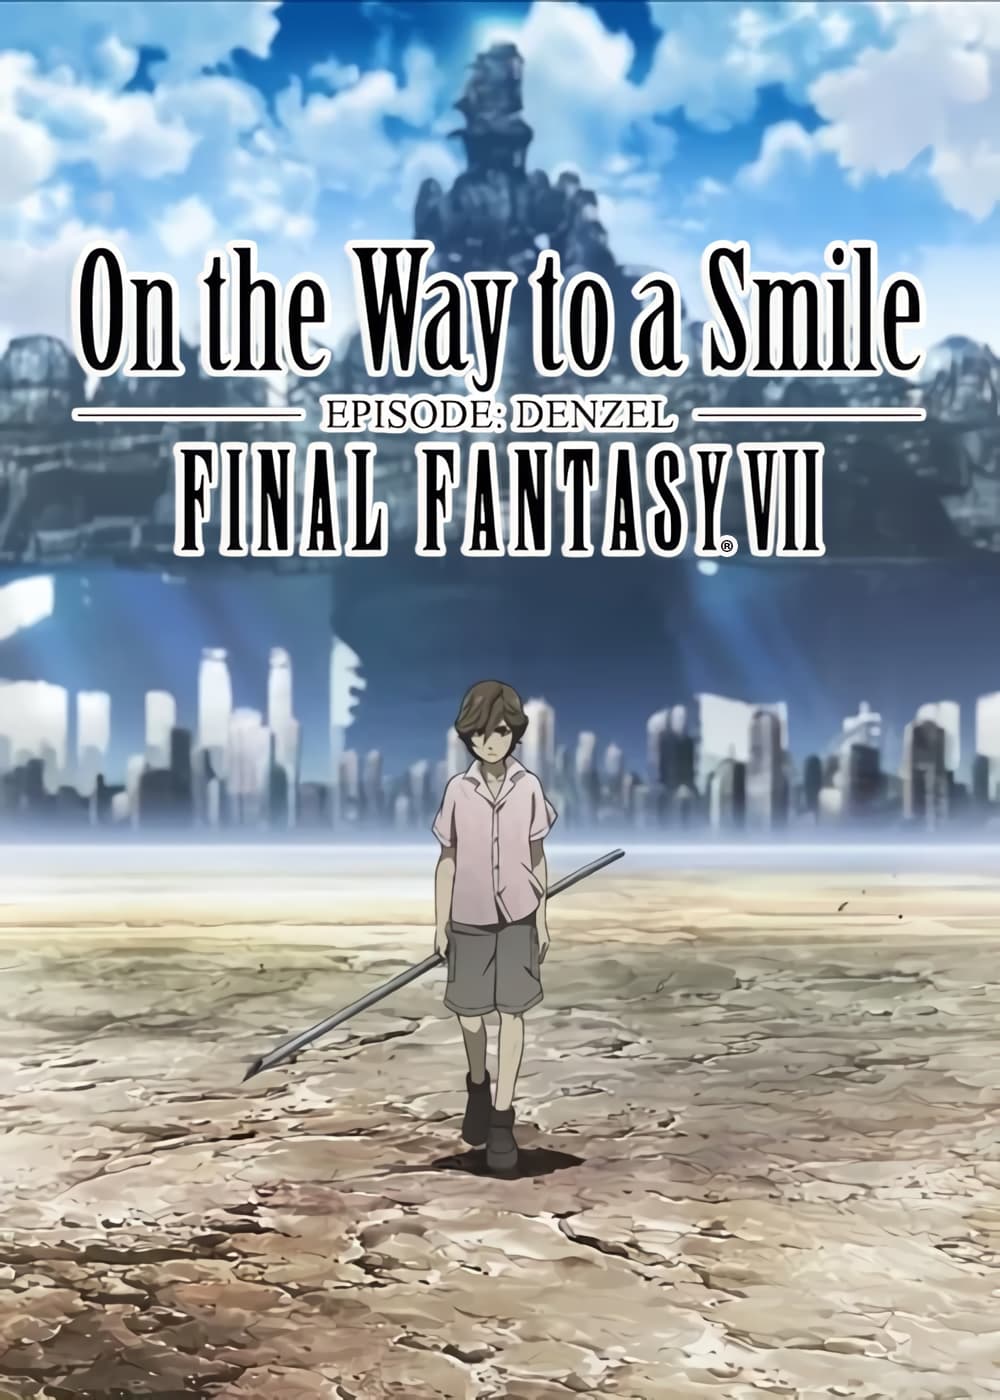 Final Fantasy VII: On the Way to a Smile - Episode Denzel (2009)